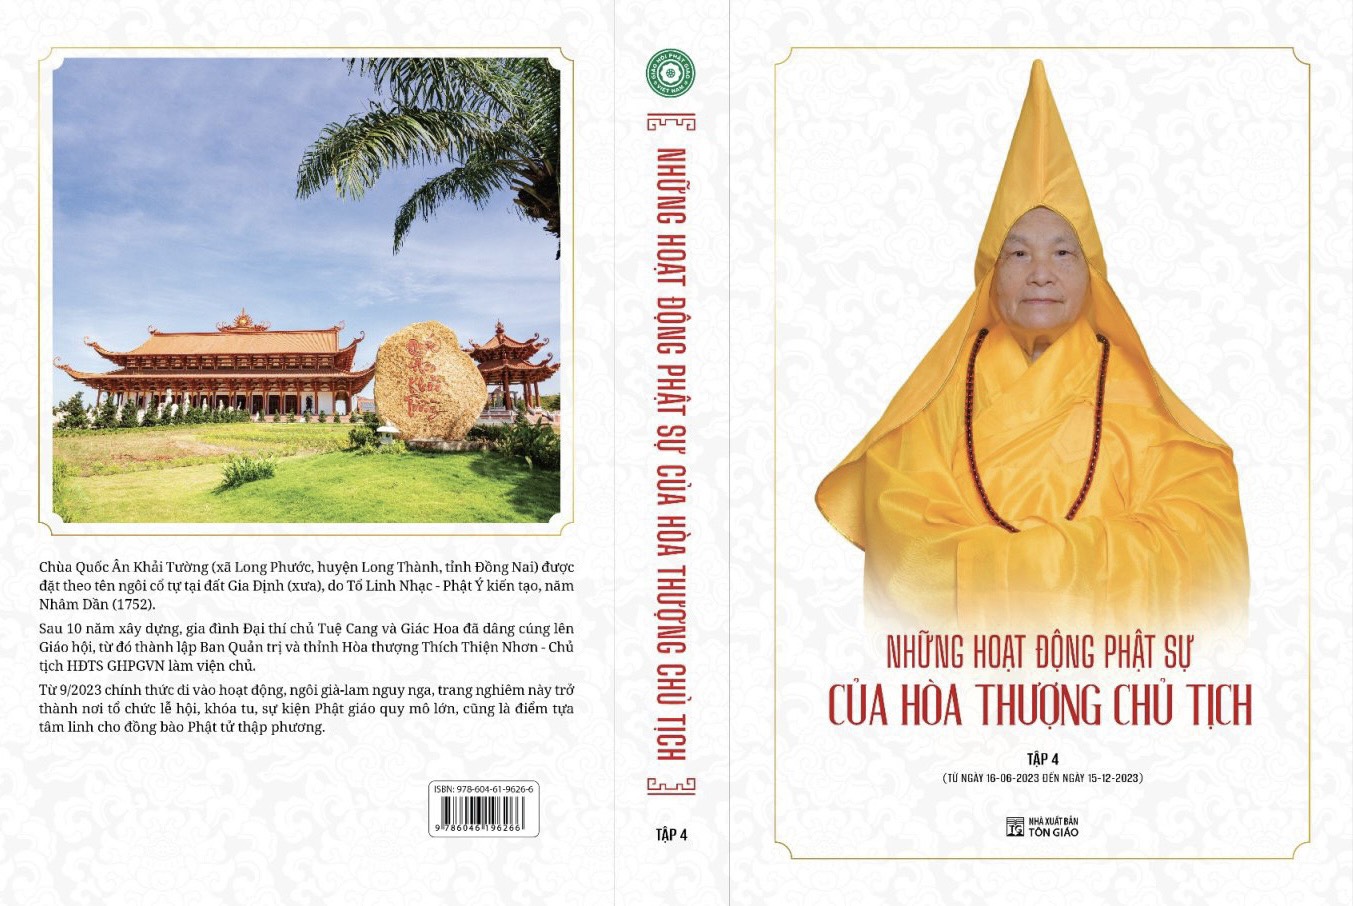 Giới thiệu: Tập 4 kỷ yếu “Những hoạt động Phật sự của Hòa Thượng Chủ Tịch”